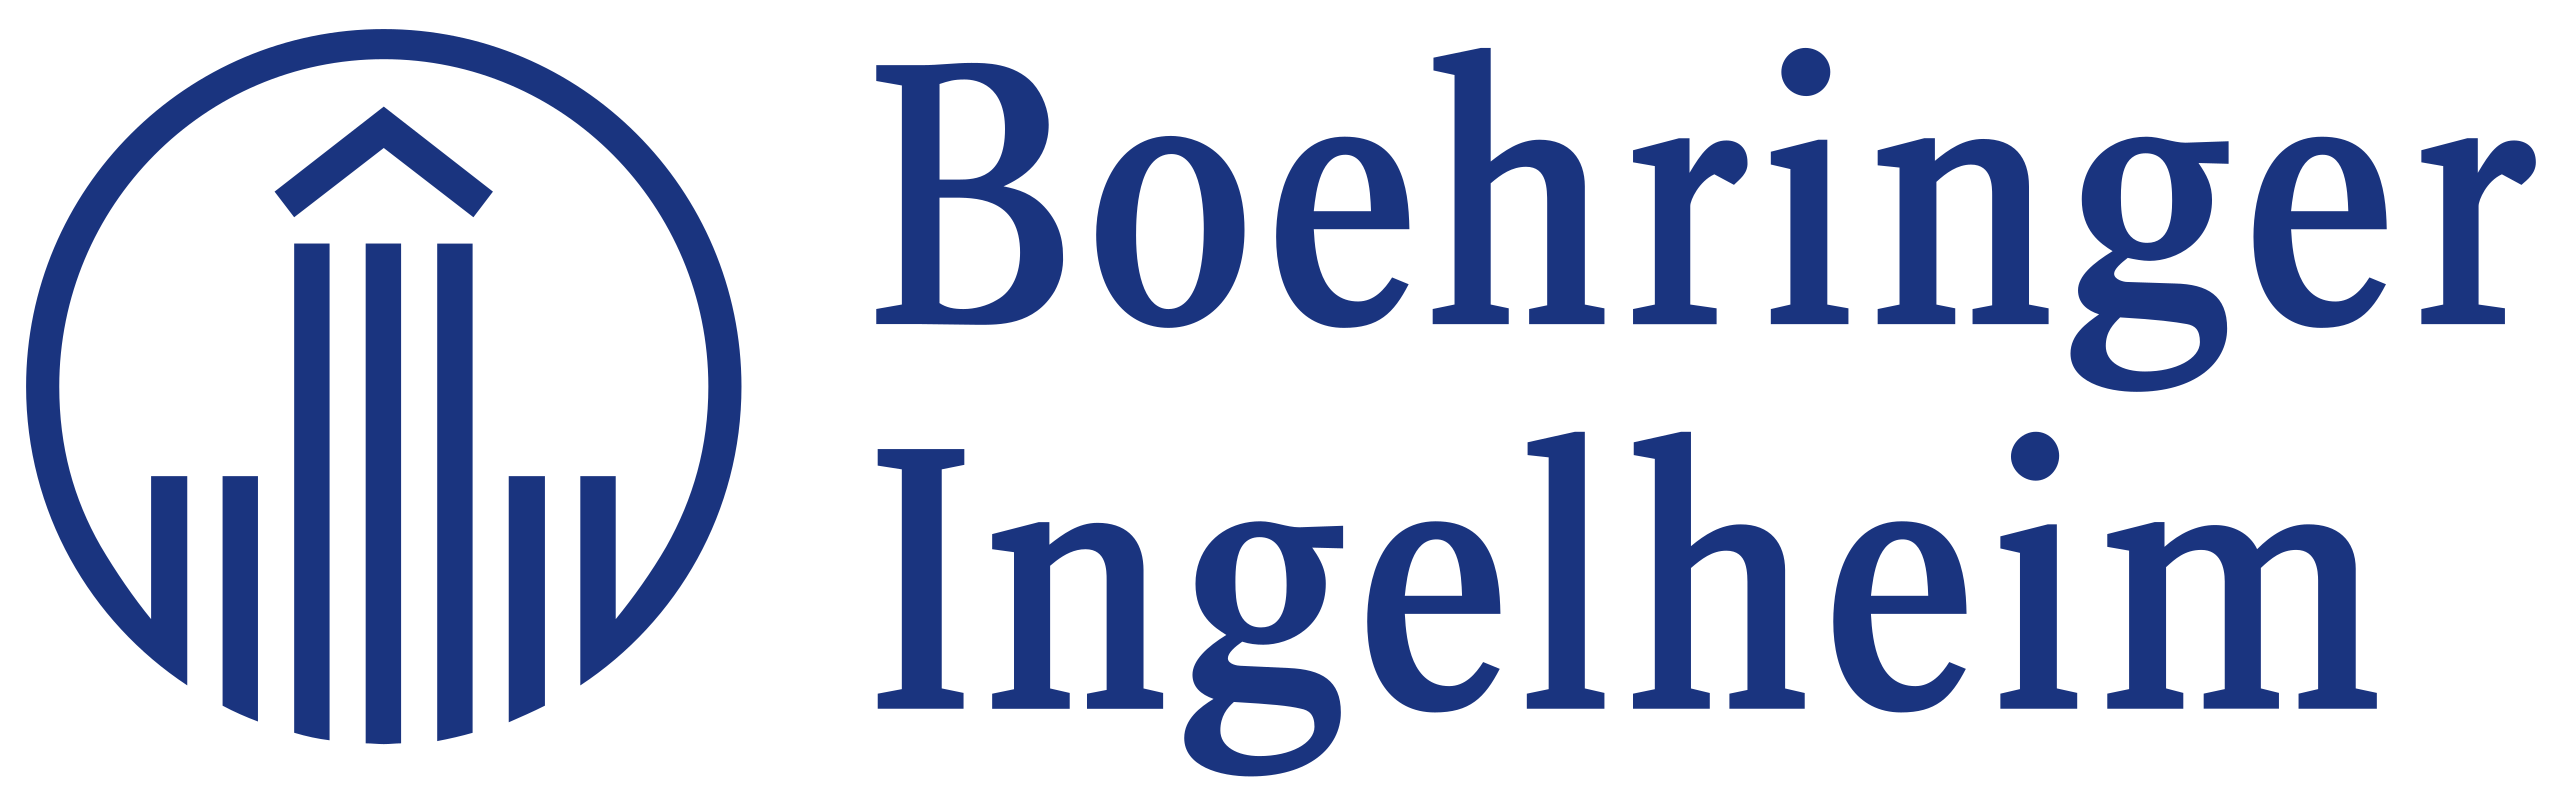 innovate-boehringer's provider logo